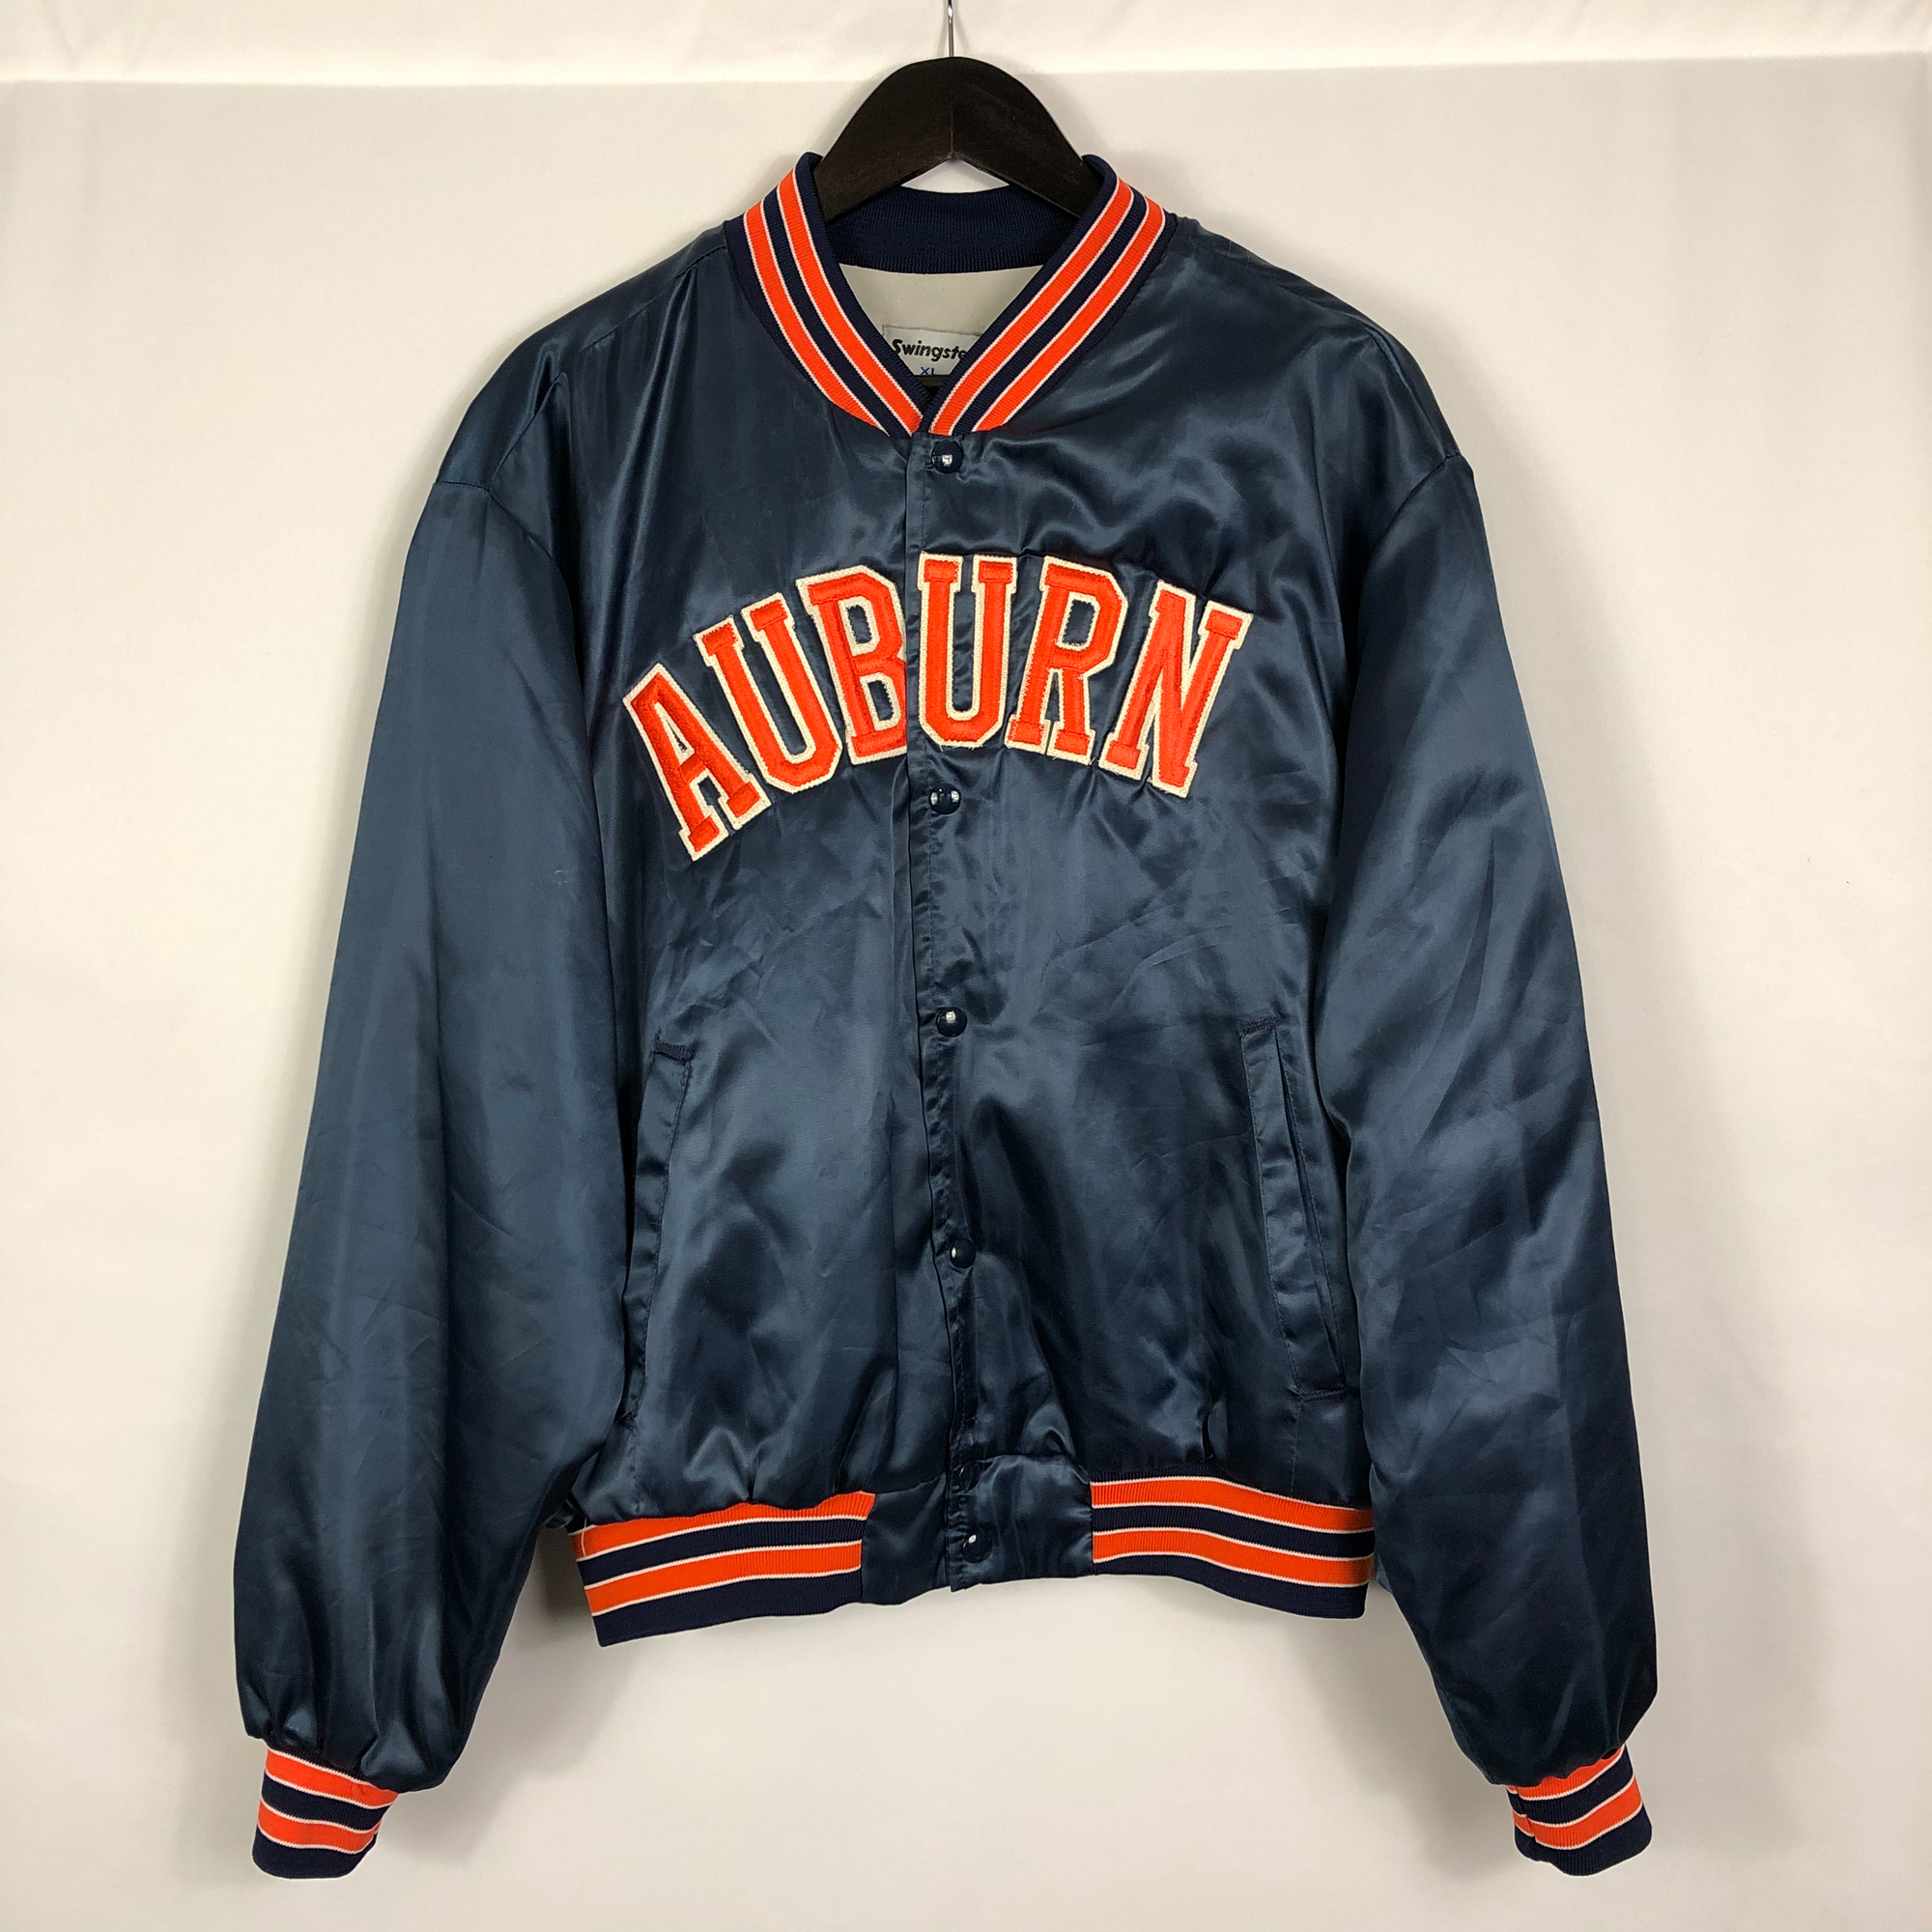 Vintage Auburn Varsity Jacket - Women's XL/Men's Large